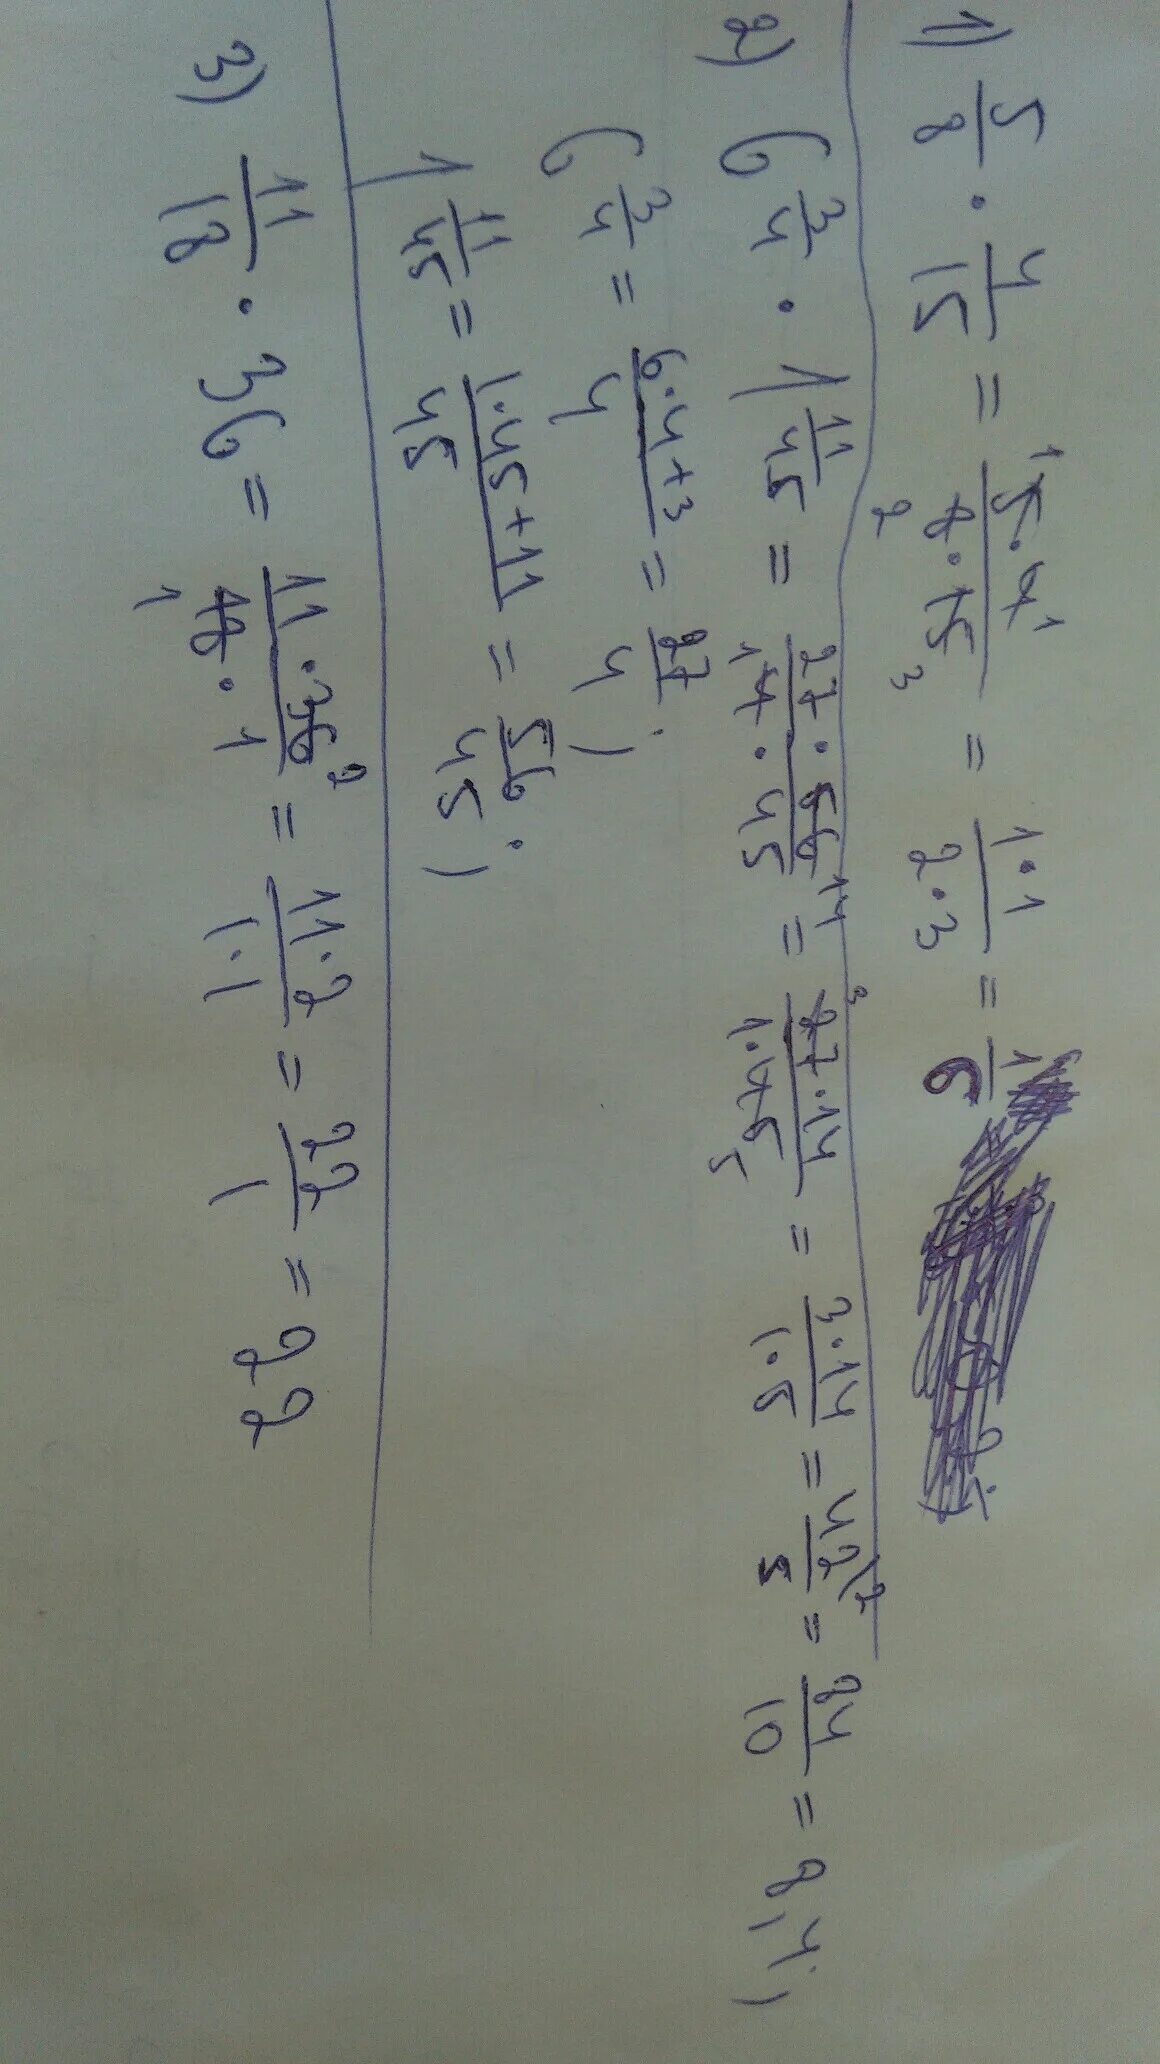 8 15 умножить на 6. 18 1/3*1 2/11*1 4/5 *15 Ответ. 3/4-1/6 Умножить на 3. 15 Умножить 1 1/3 1/5. (1 1/3 ^) Умножить (2 1/5+1,4).